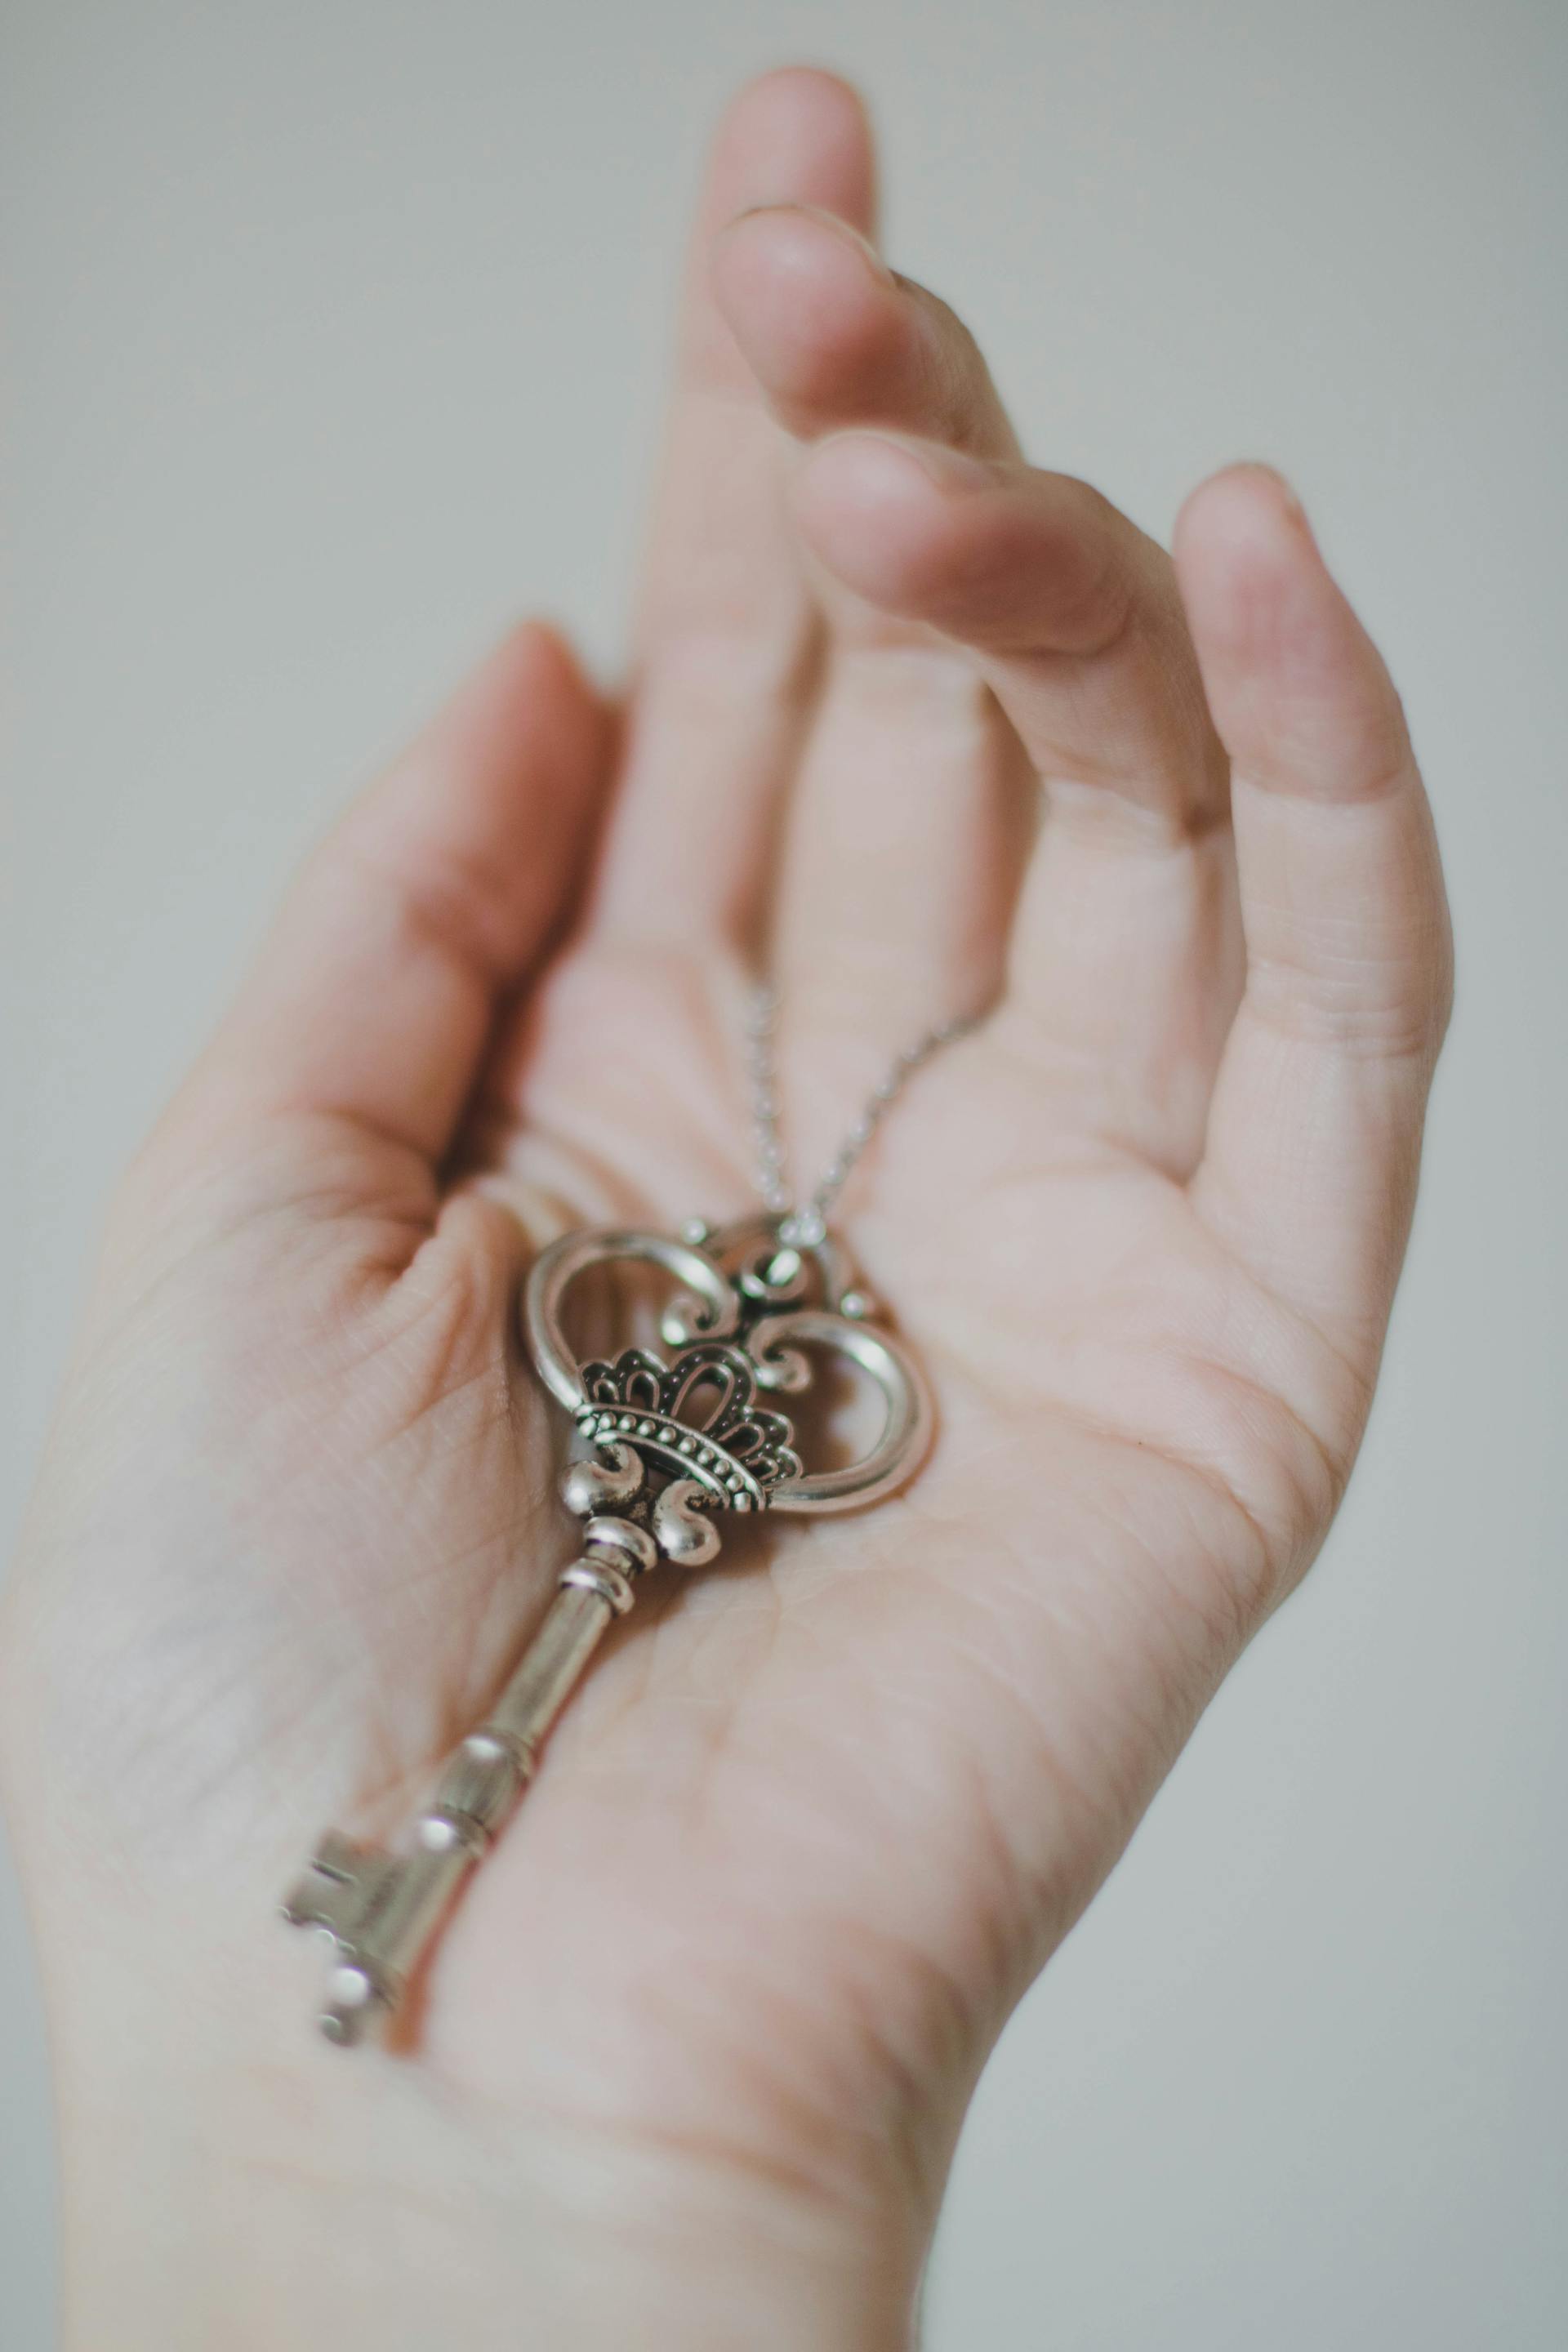 Une personne tenant une clé  de couleur argentée | Source : Pexels